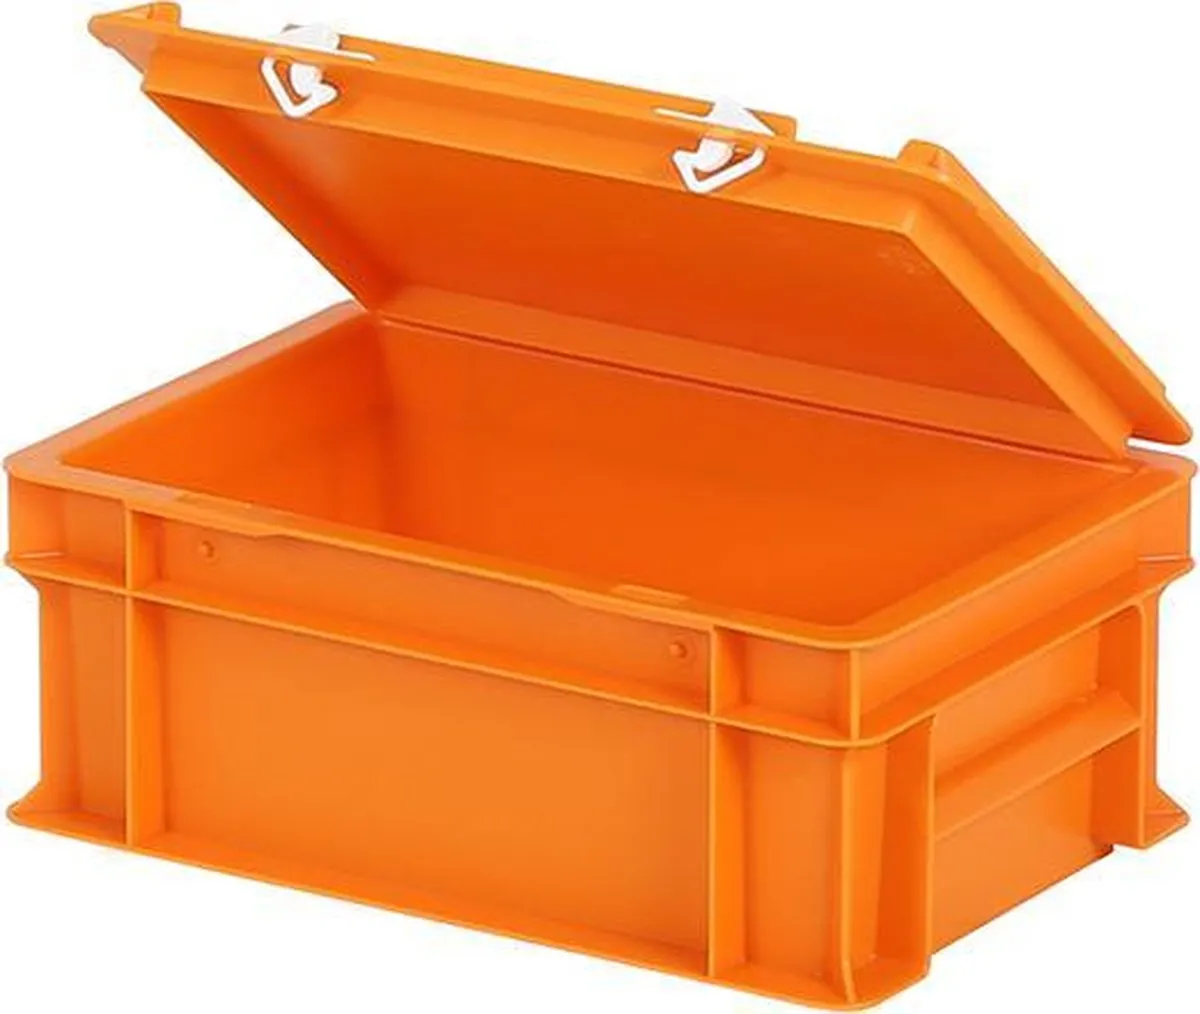 Deckelbehälter Orange